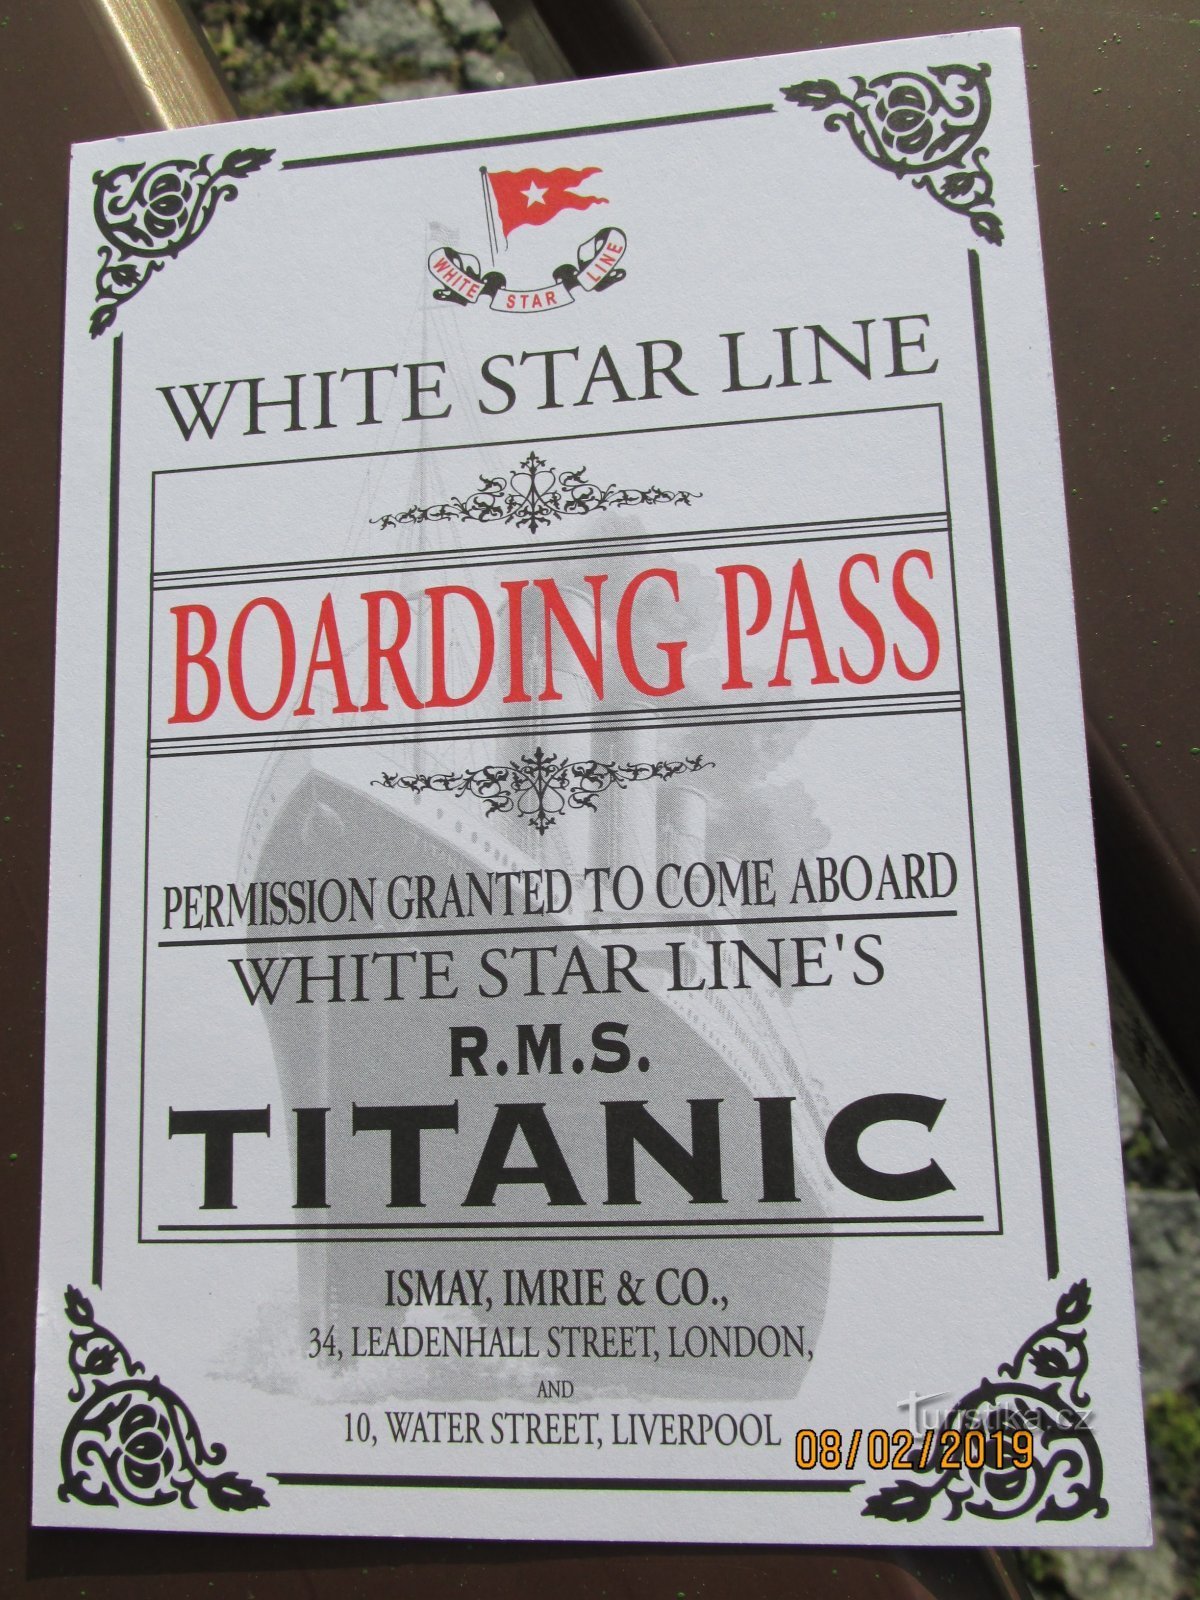 Sube a bordo del legendario Titanic